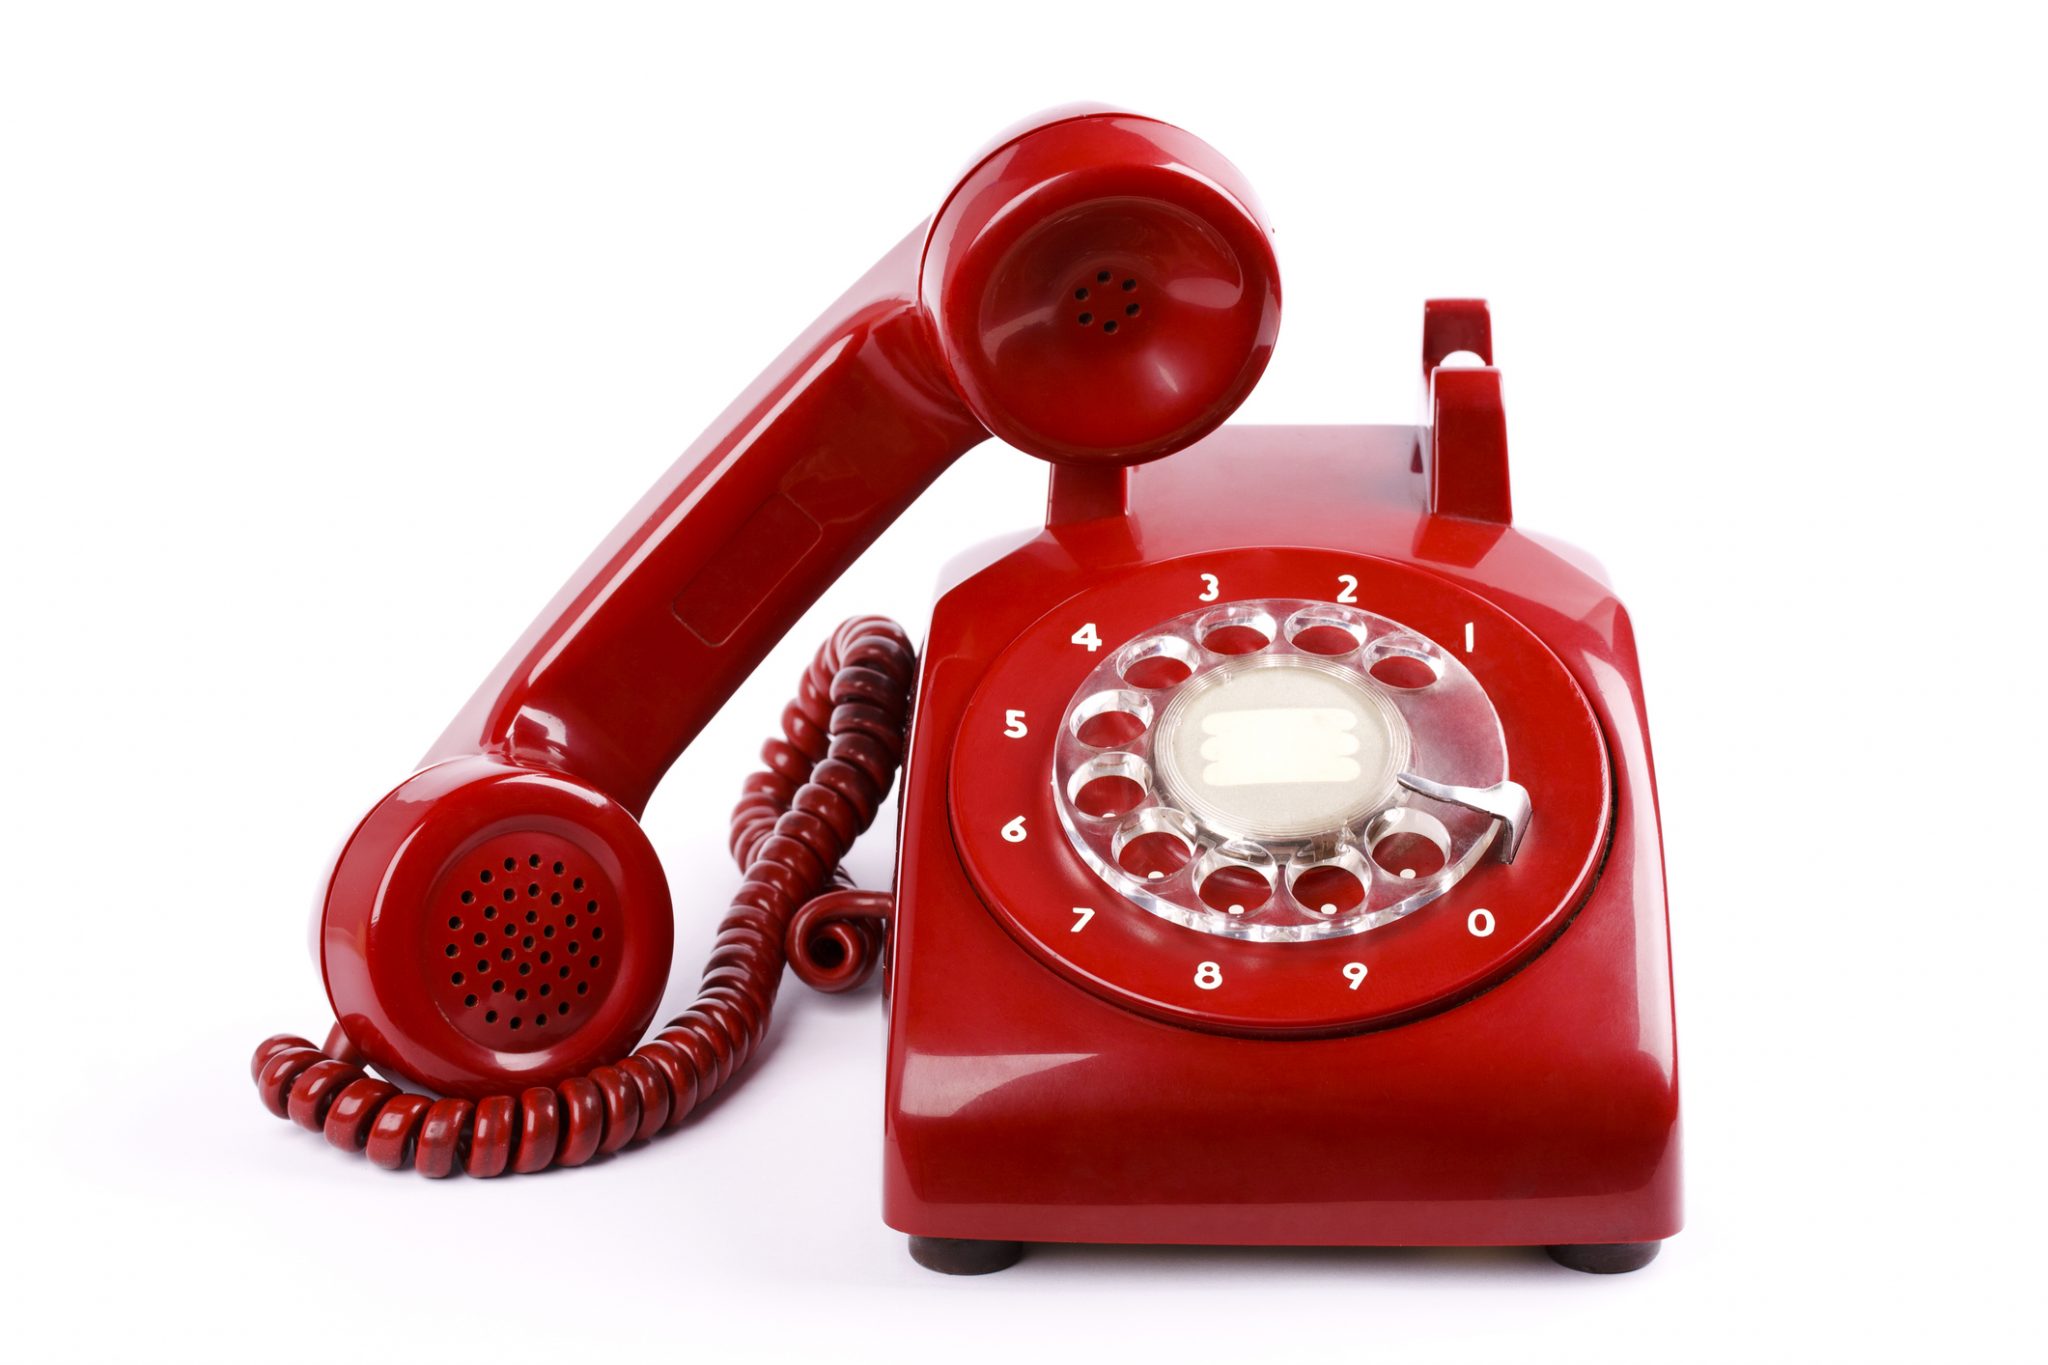 Обращайтесь по телефону 7. Горячая линия. Красный телефон. Телефонная трубка. Красный телефонный аппарат.